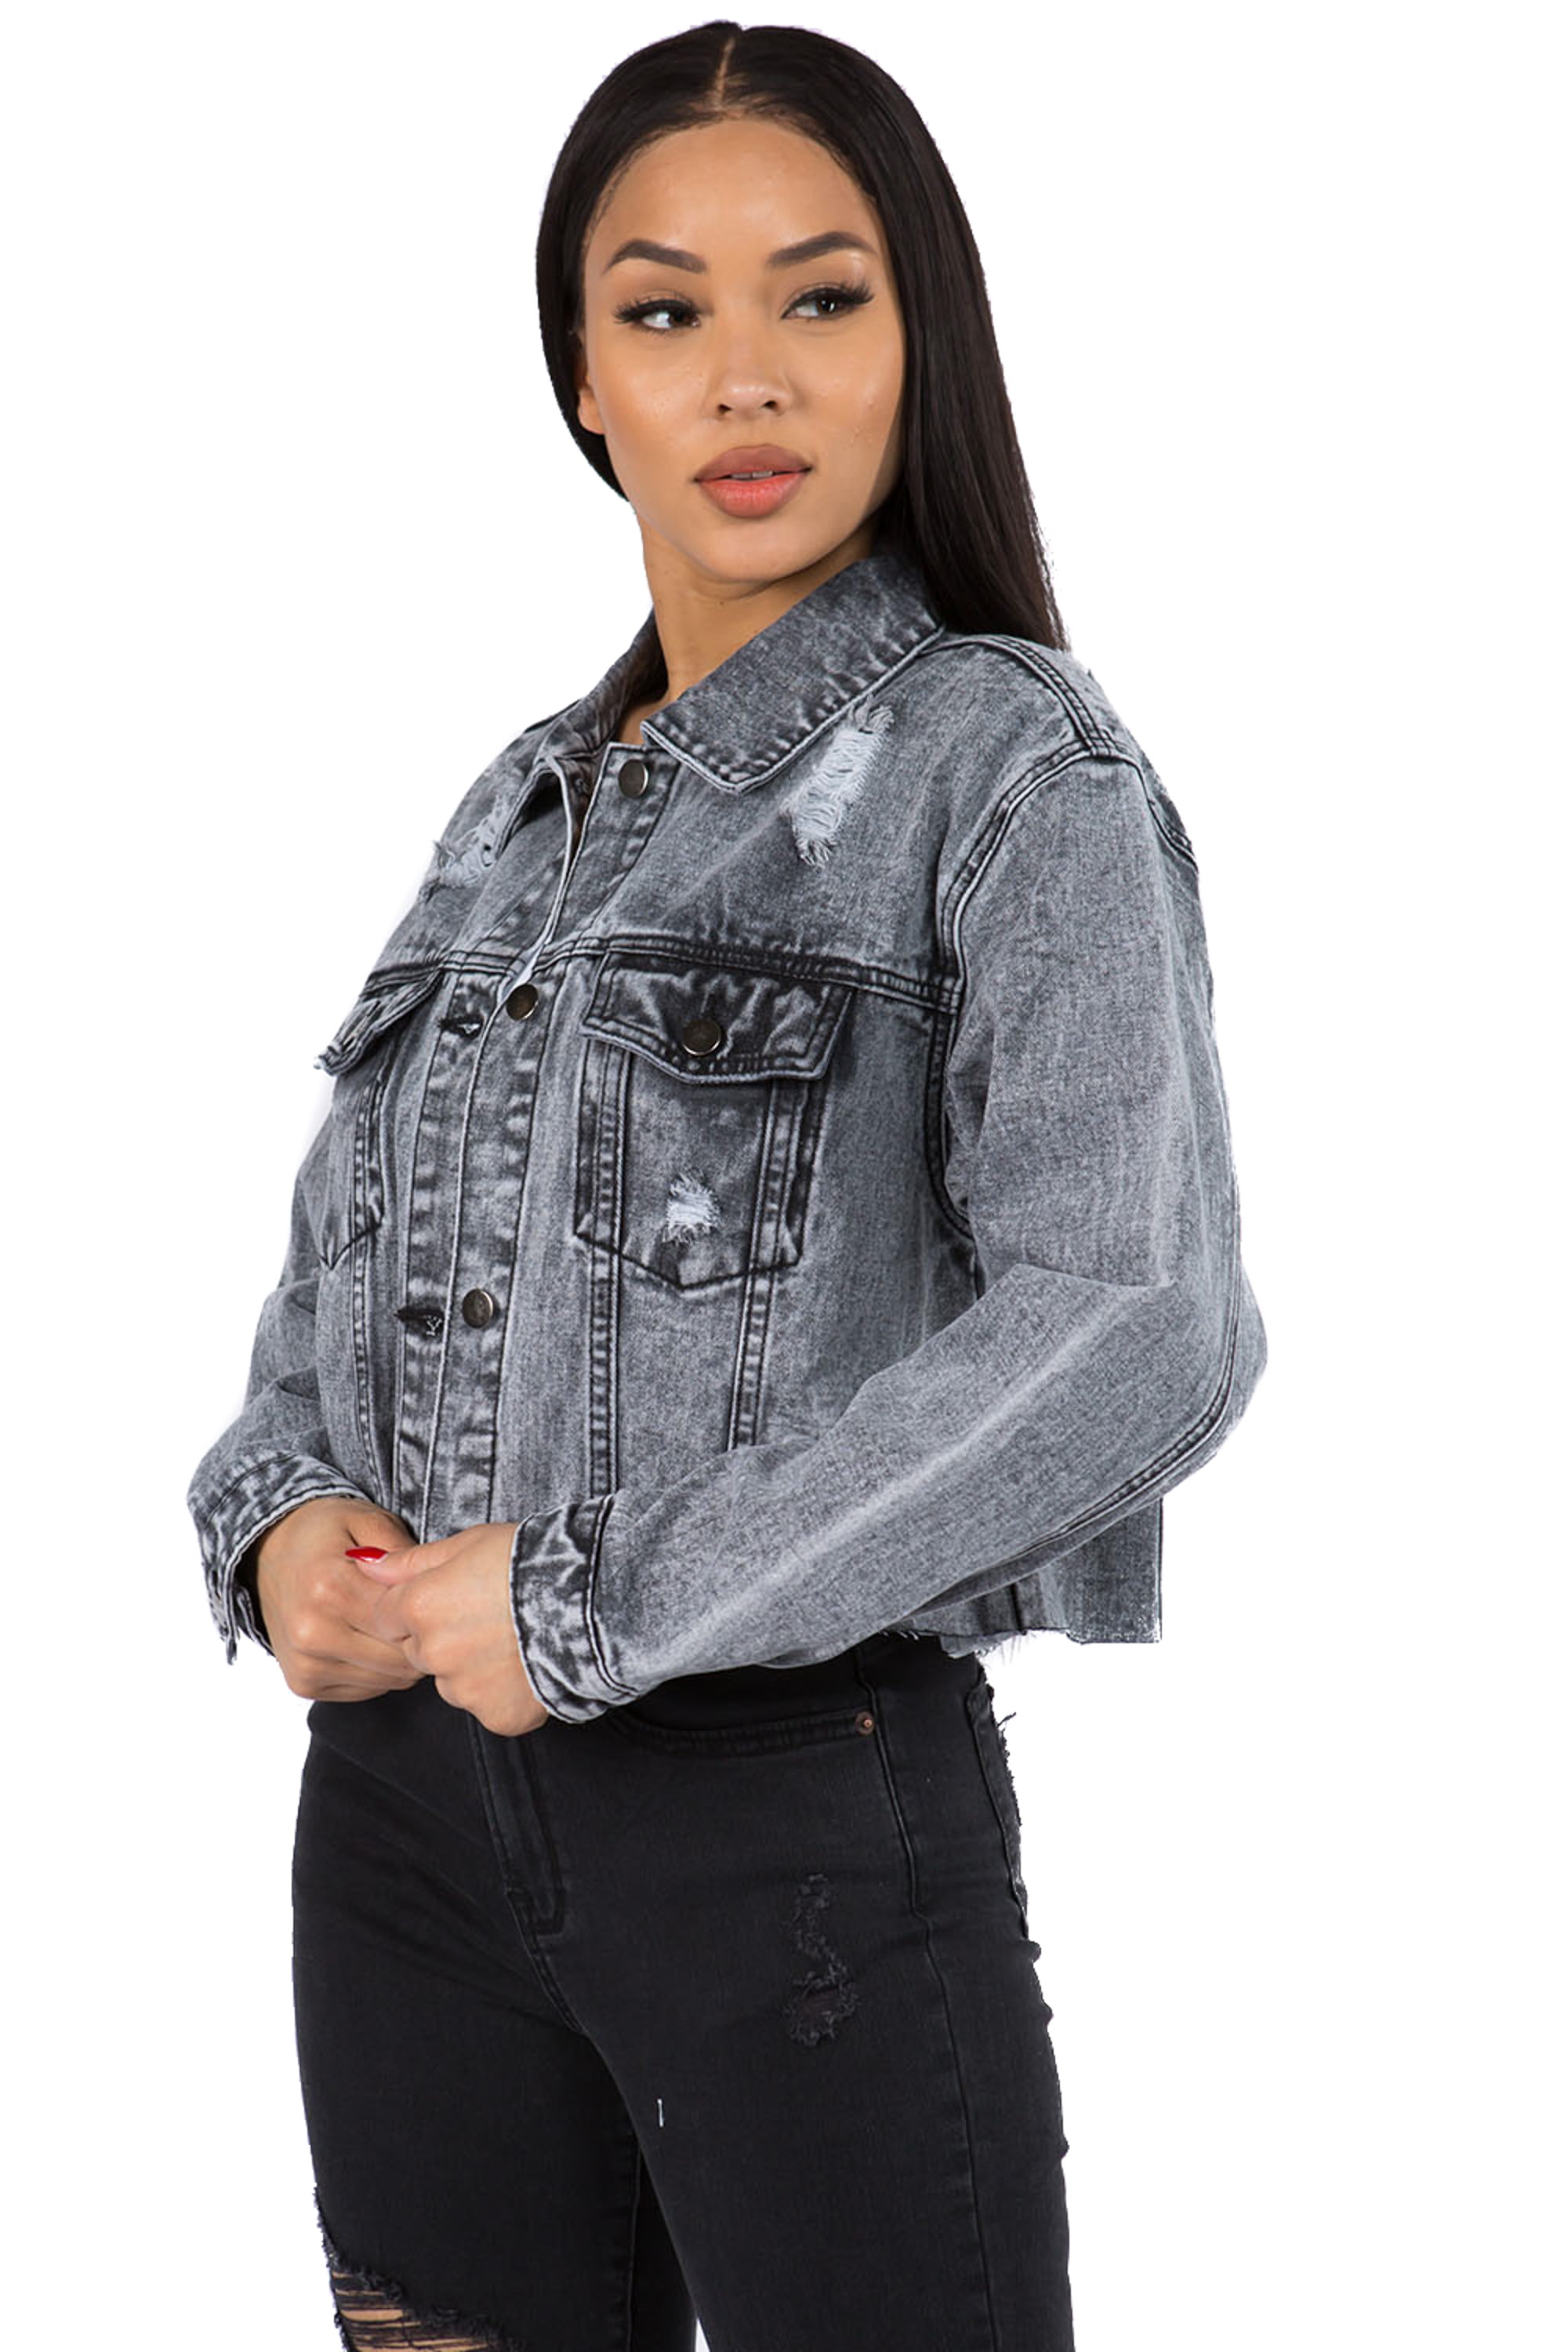 Love Moda Women's Denim Jeans Graphic Chain Crop Washed Jacket - 2X, Black #Rjk30044, Size: 2XL